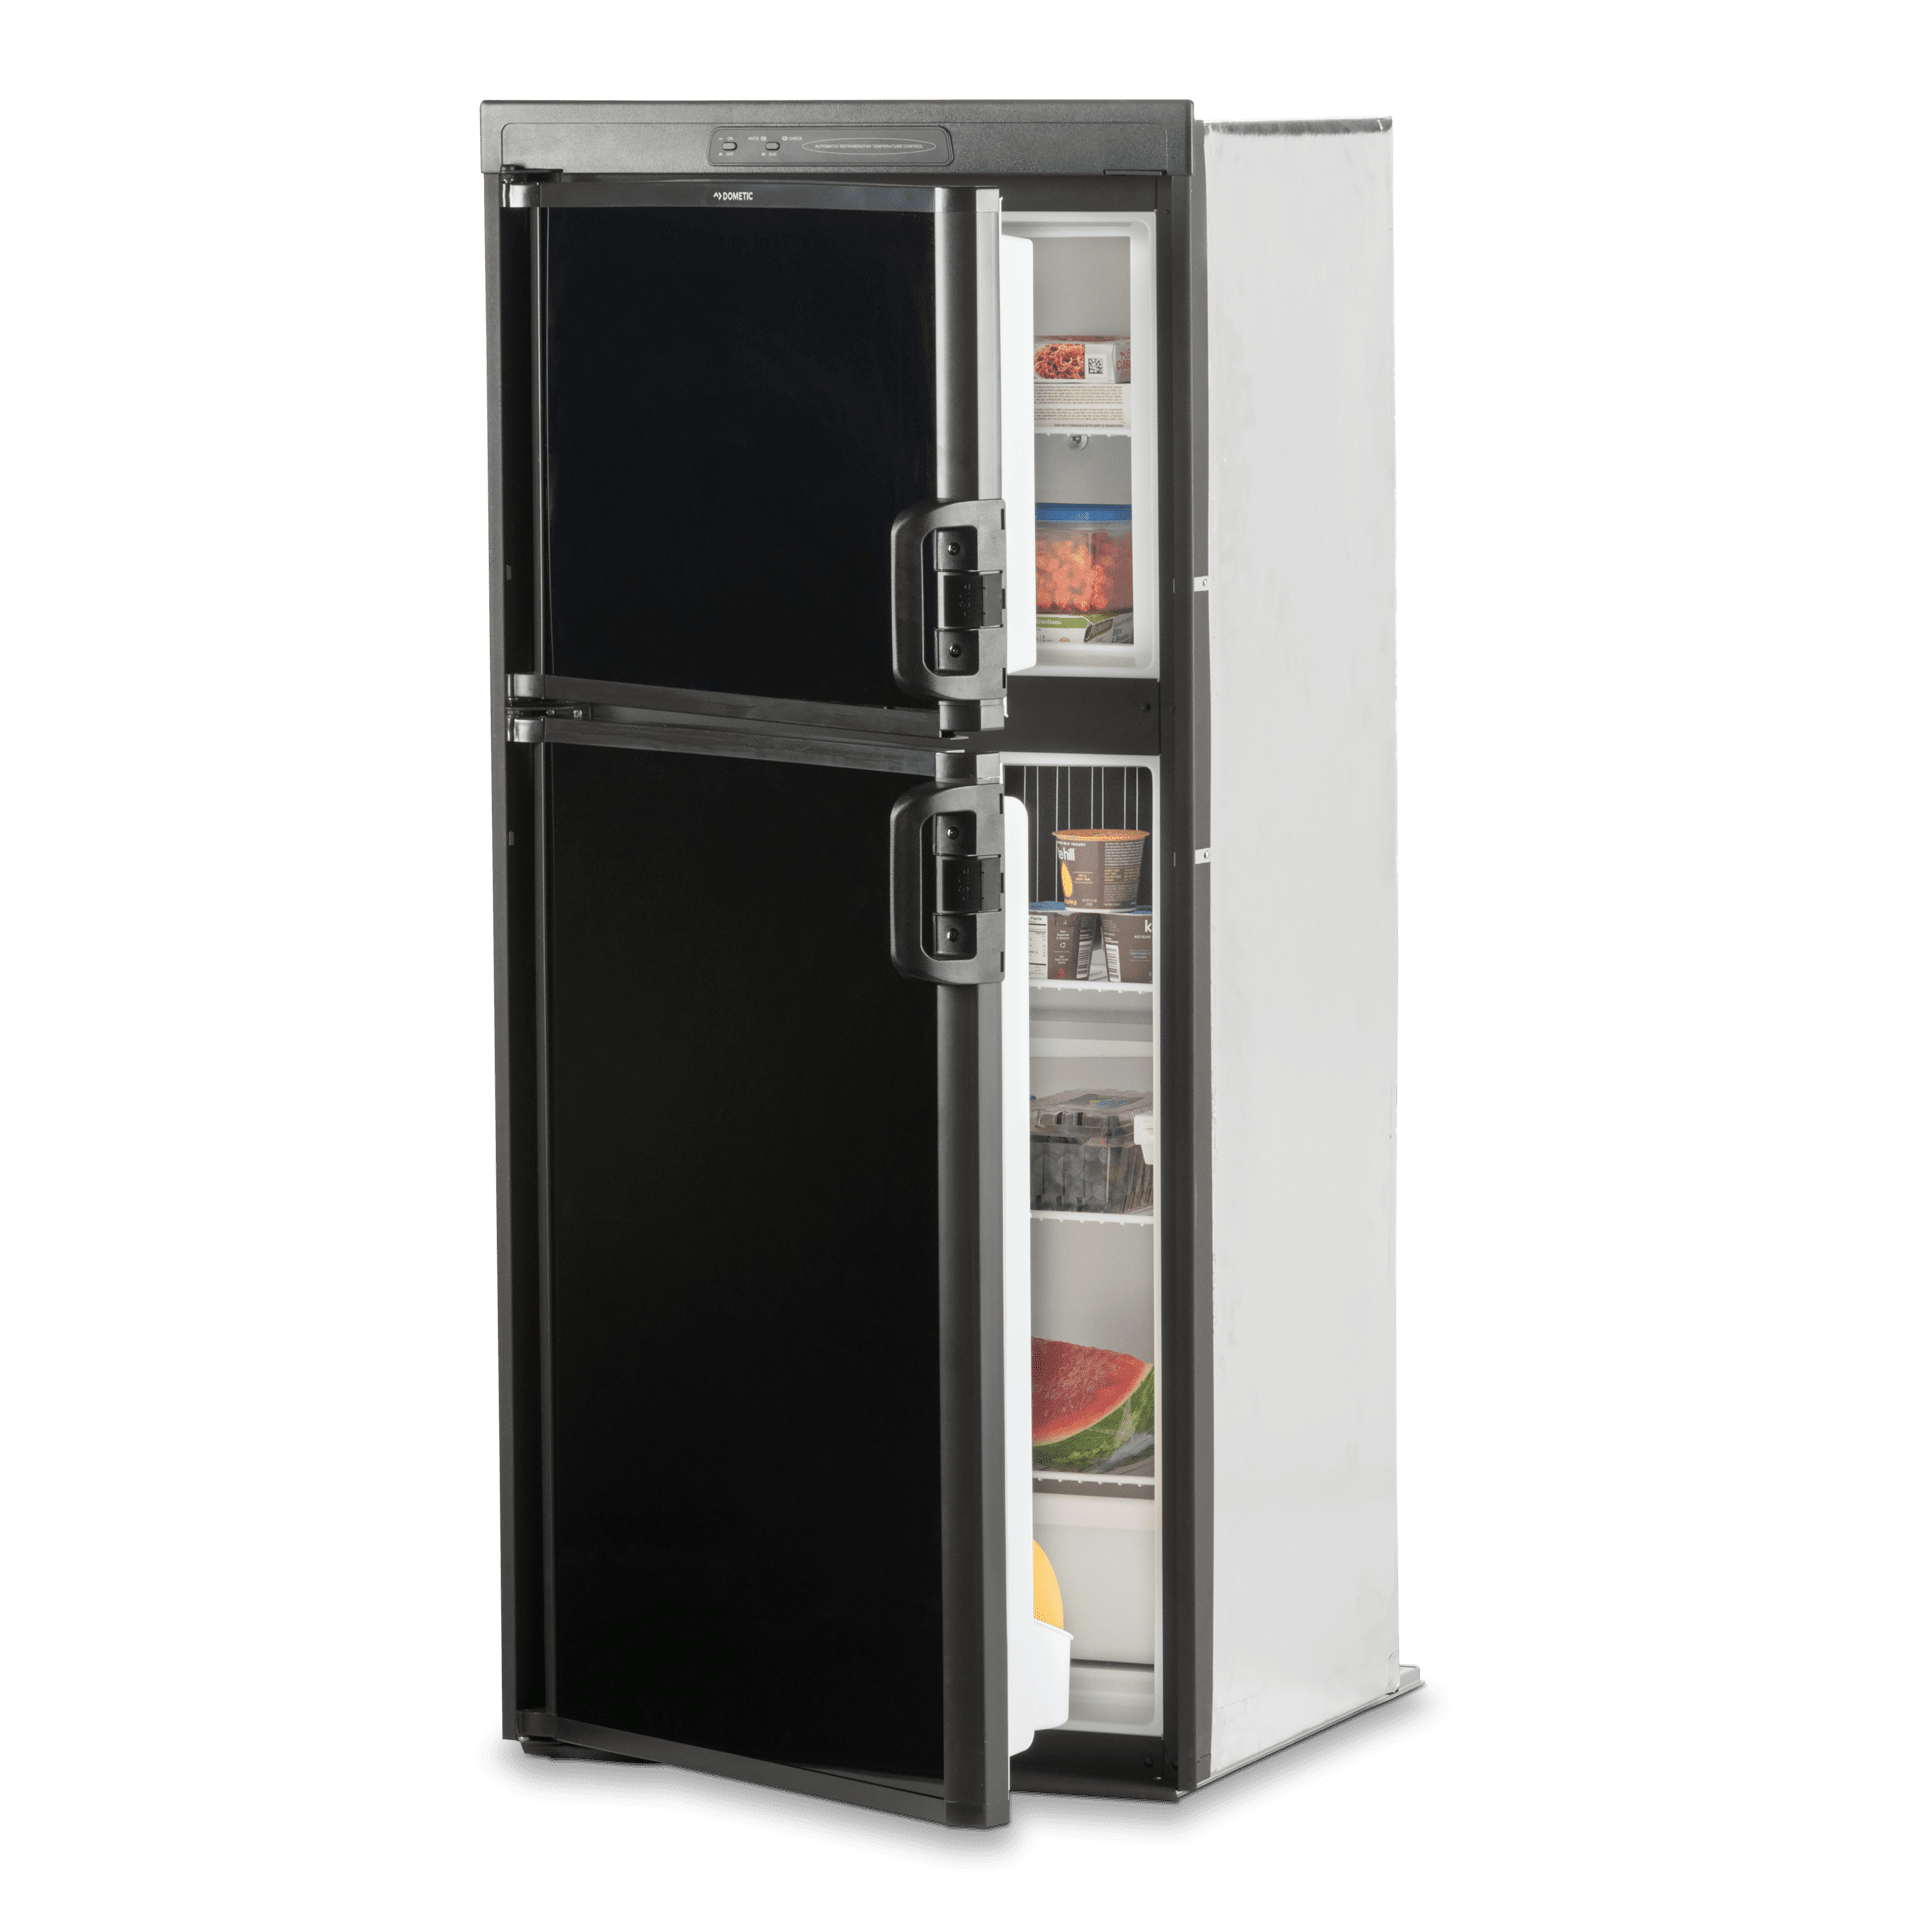 12v rv refrigerator